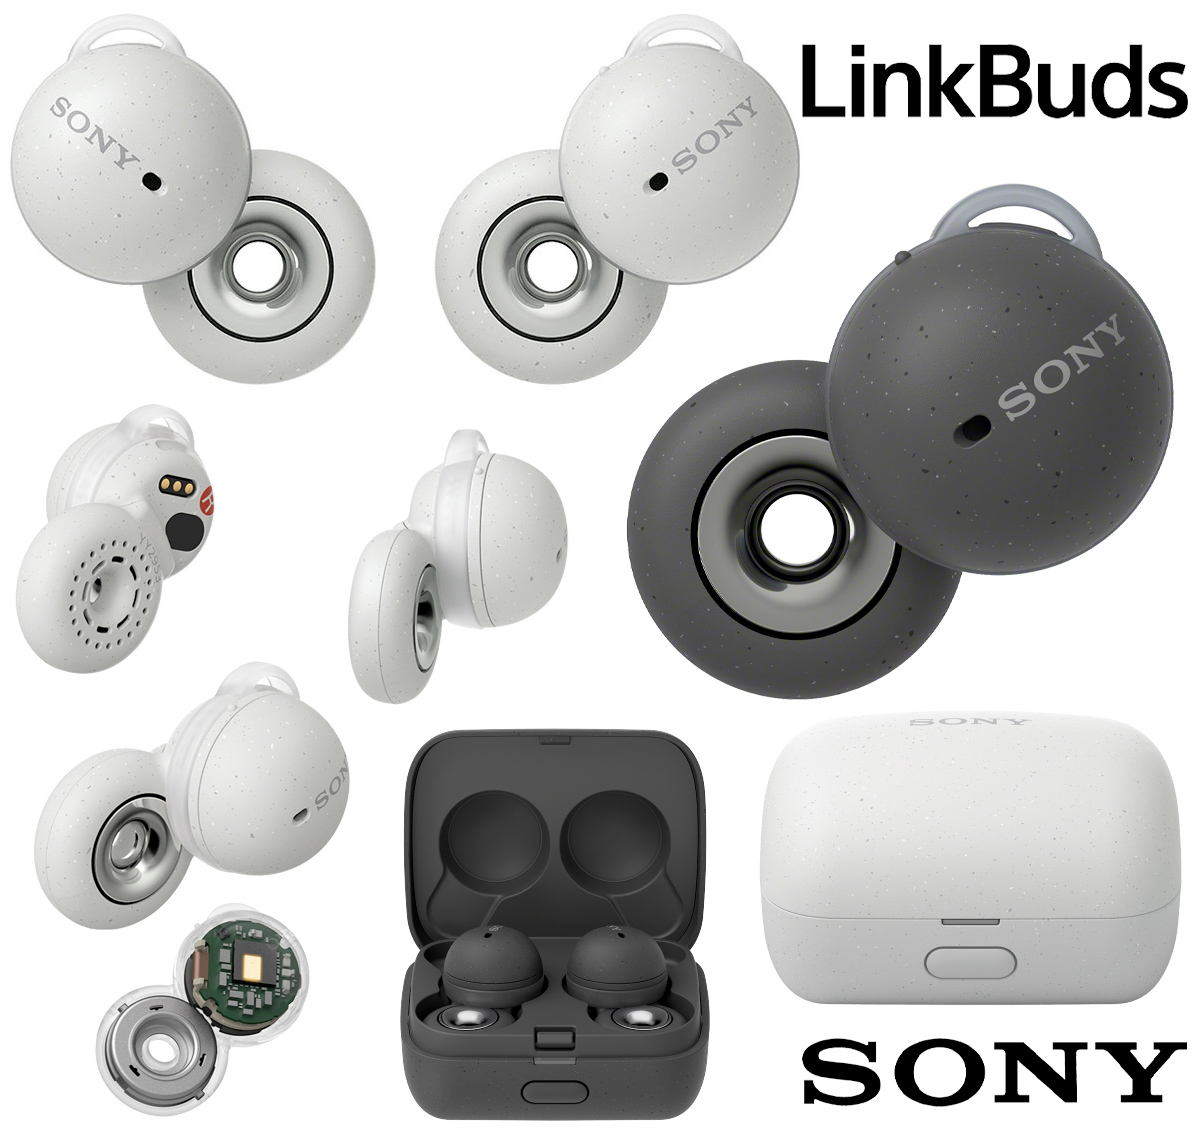 Fones de Ouvido Sony LinkBuds